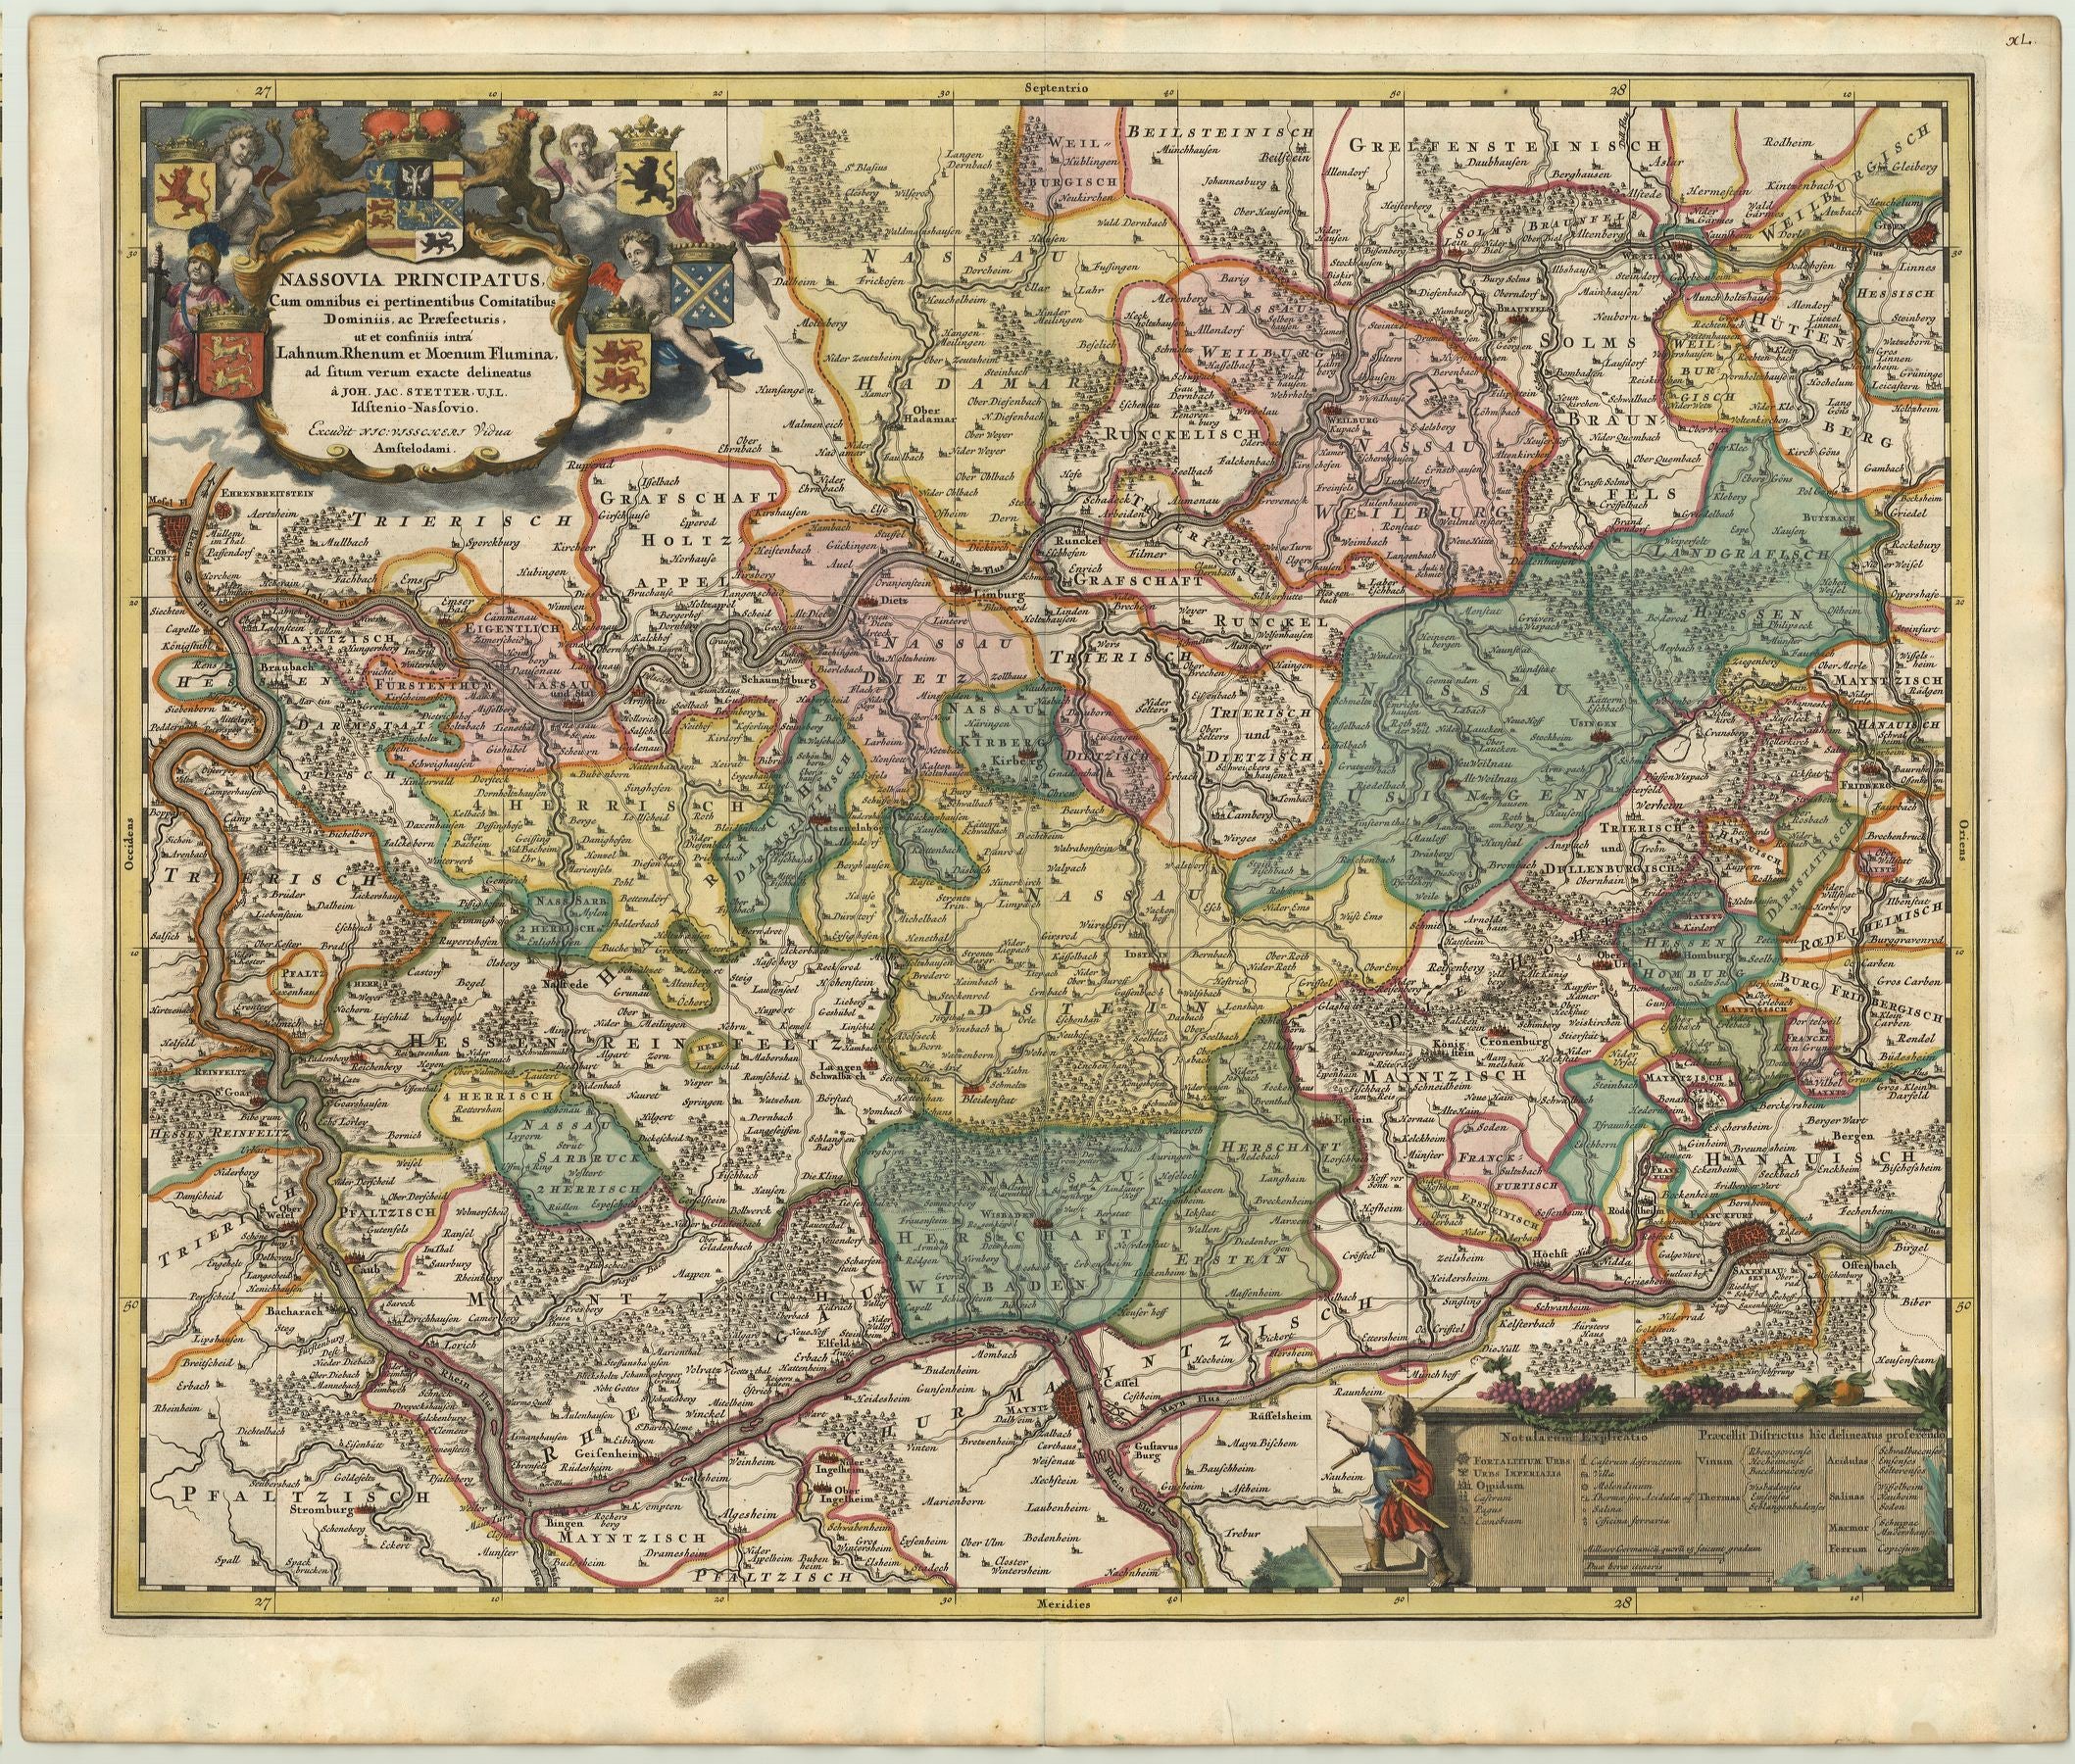 Deutschland / Nassau um das Jahr 1700 von Nicolas Visscher